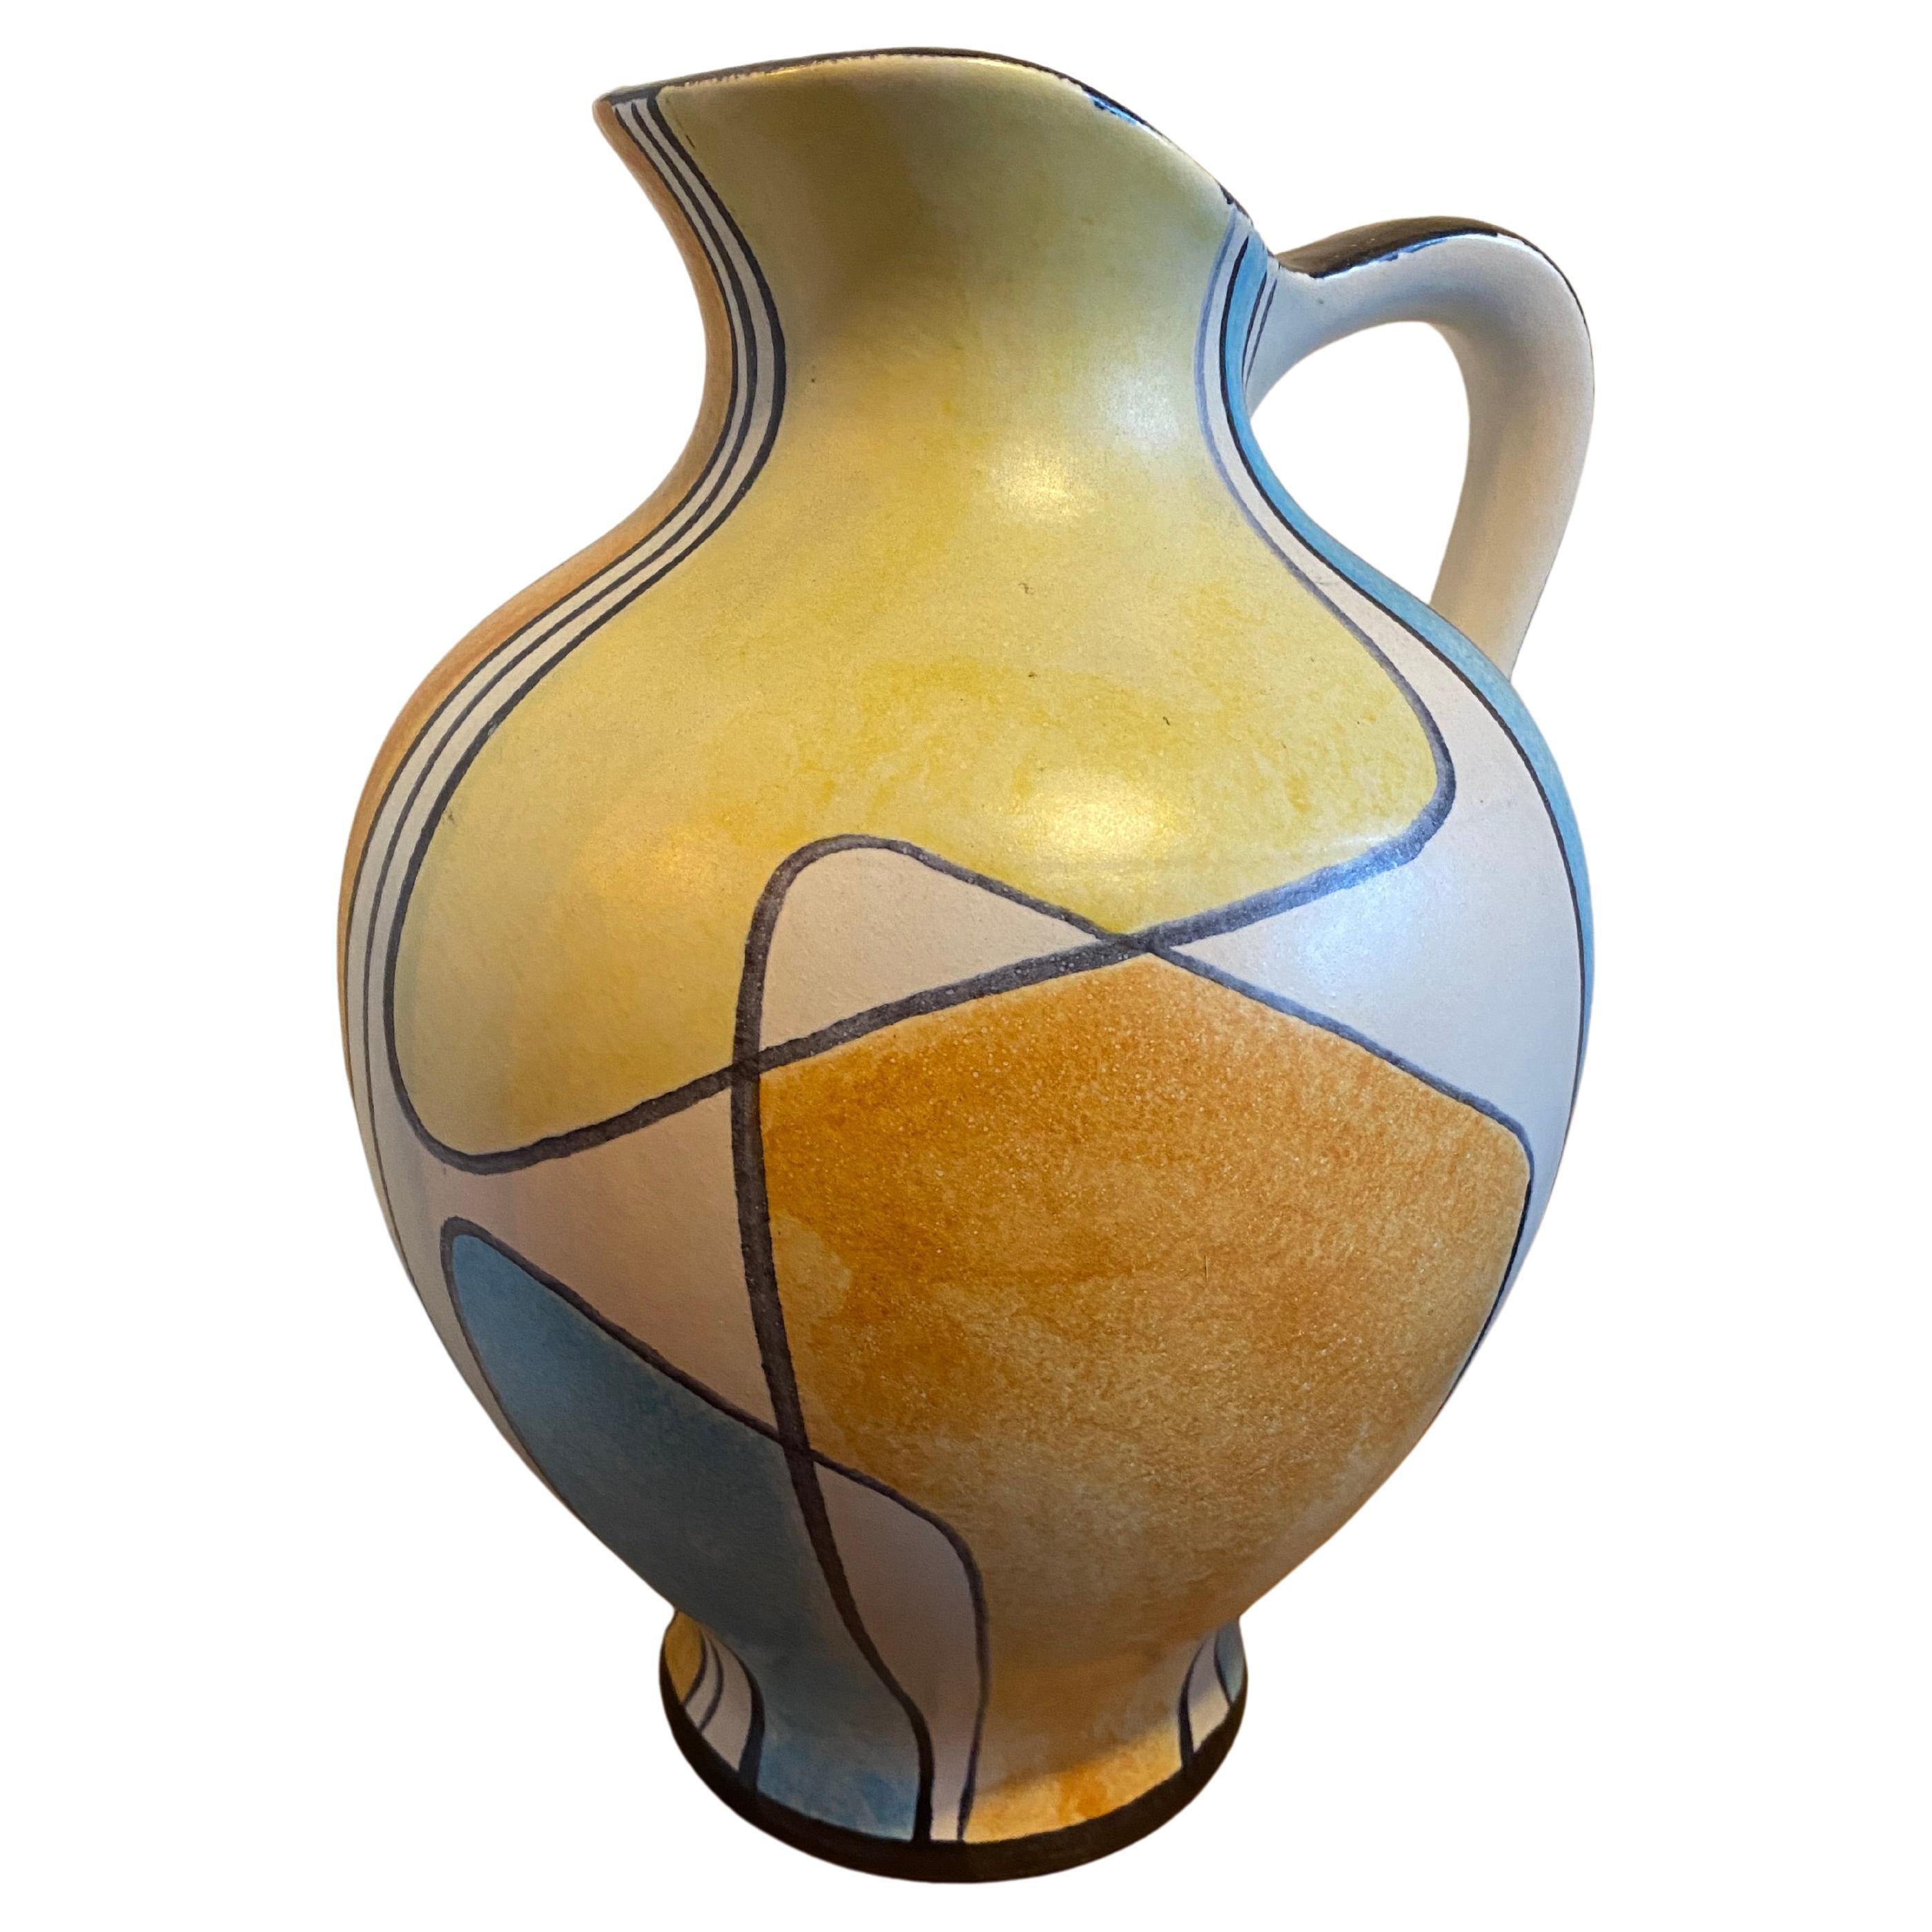 Eine atemberaubende und seltene Bay Keramik Bodenvase, entworfen von dem bekannten Designer Bodo Mans. Das Dekor oder Muster ist 